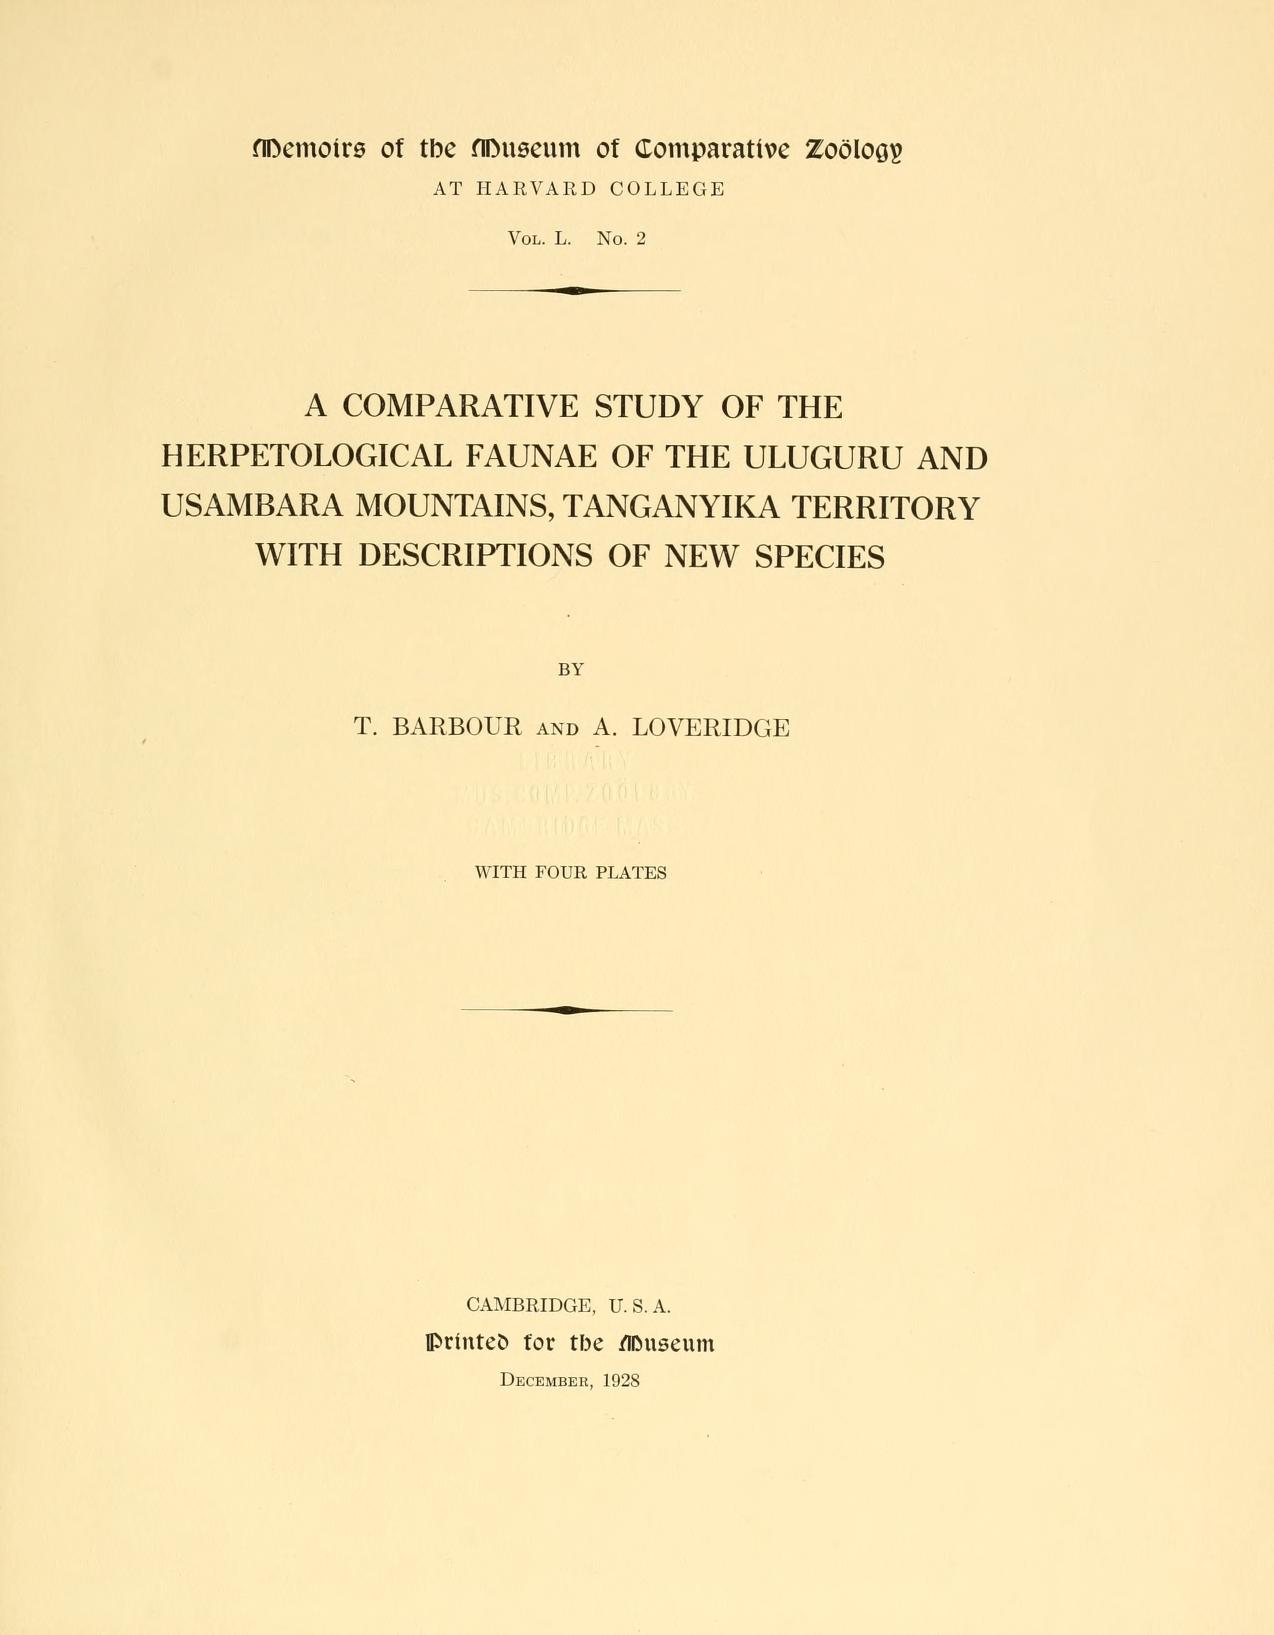 Media type: text; Barbour and Loveridge 1928 Description: MCZ Memoirs Vol. L No. 2;